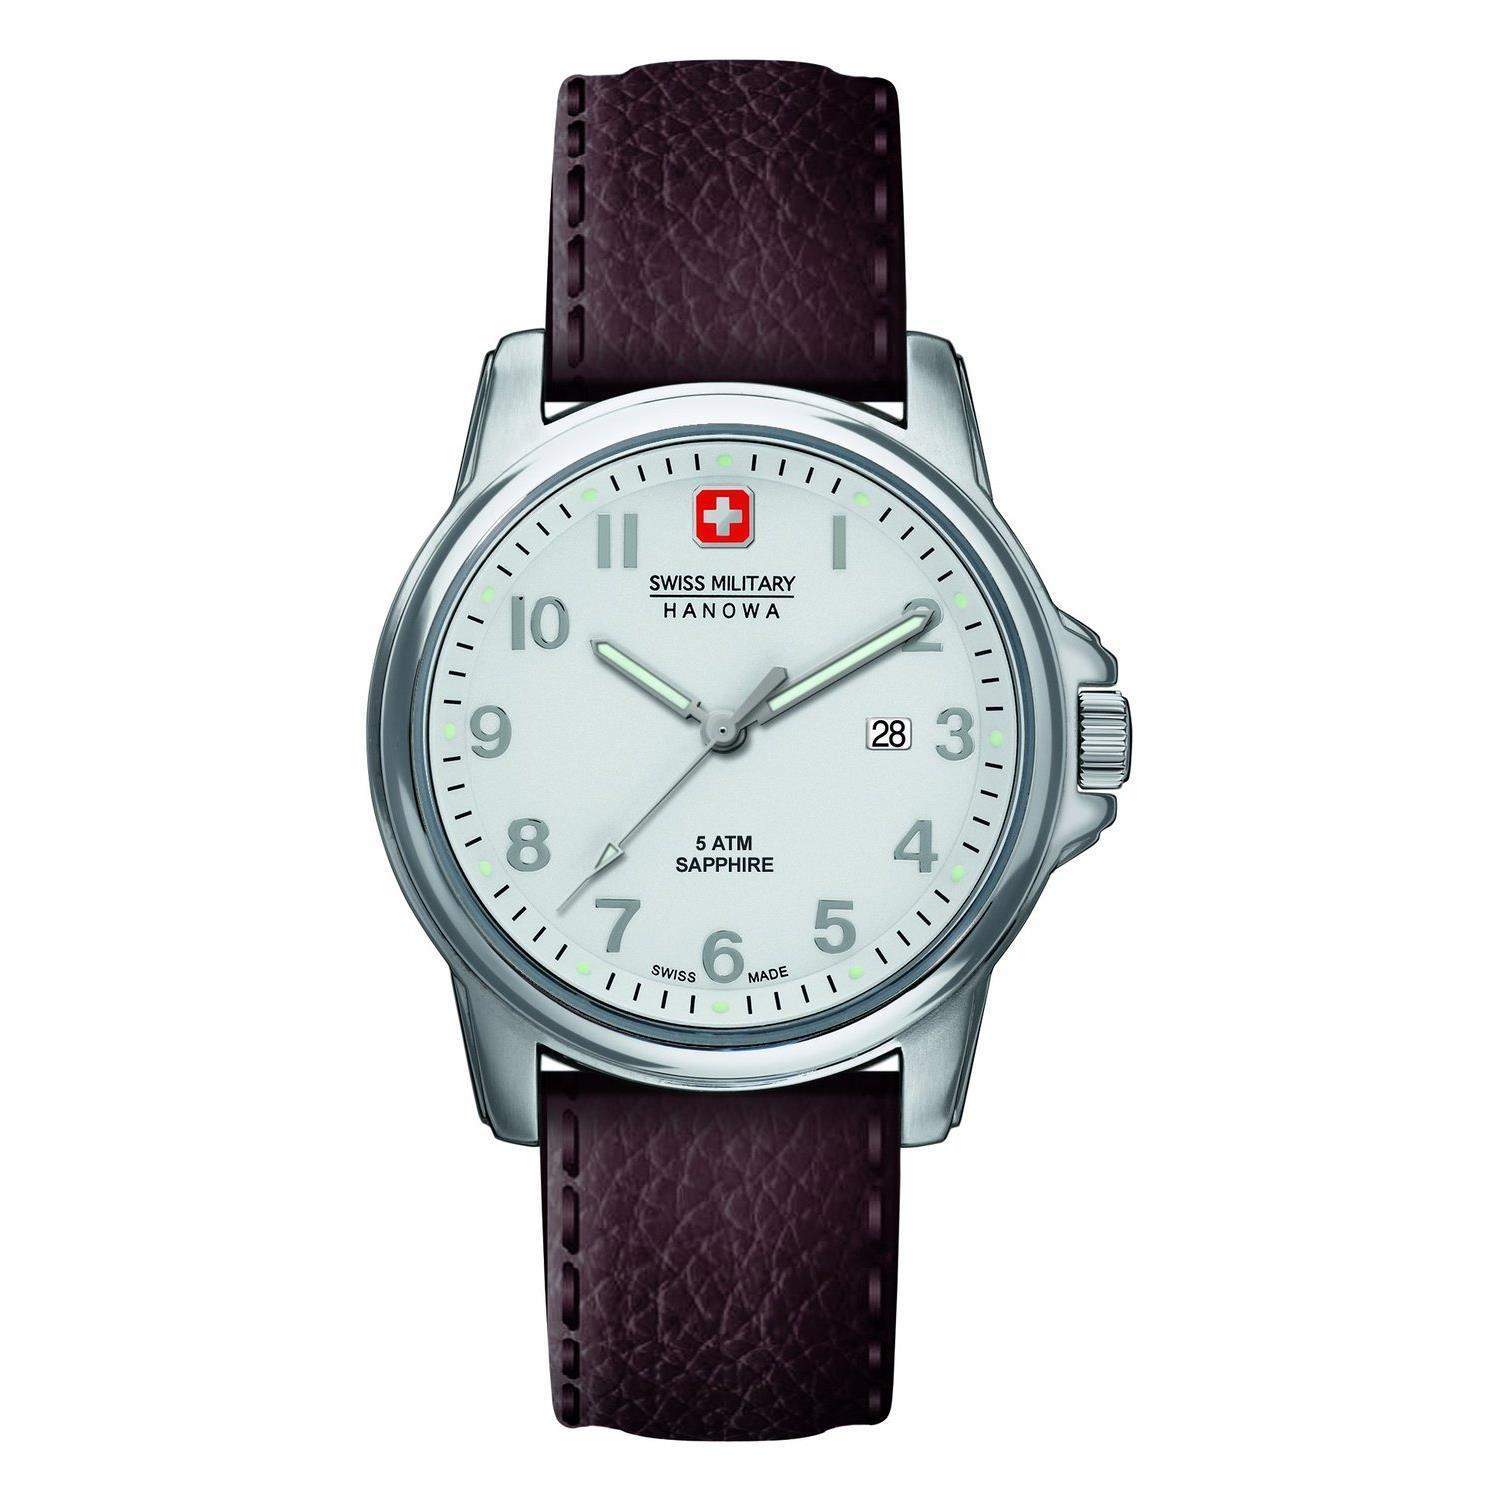 Review Swiss Military Hanowa 6-4231.04.001 Men's Watch - The Watch Blog